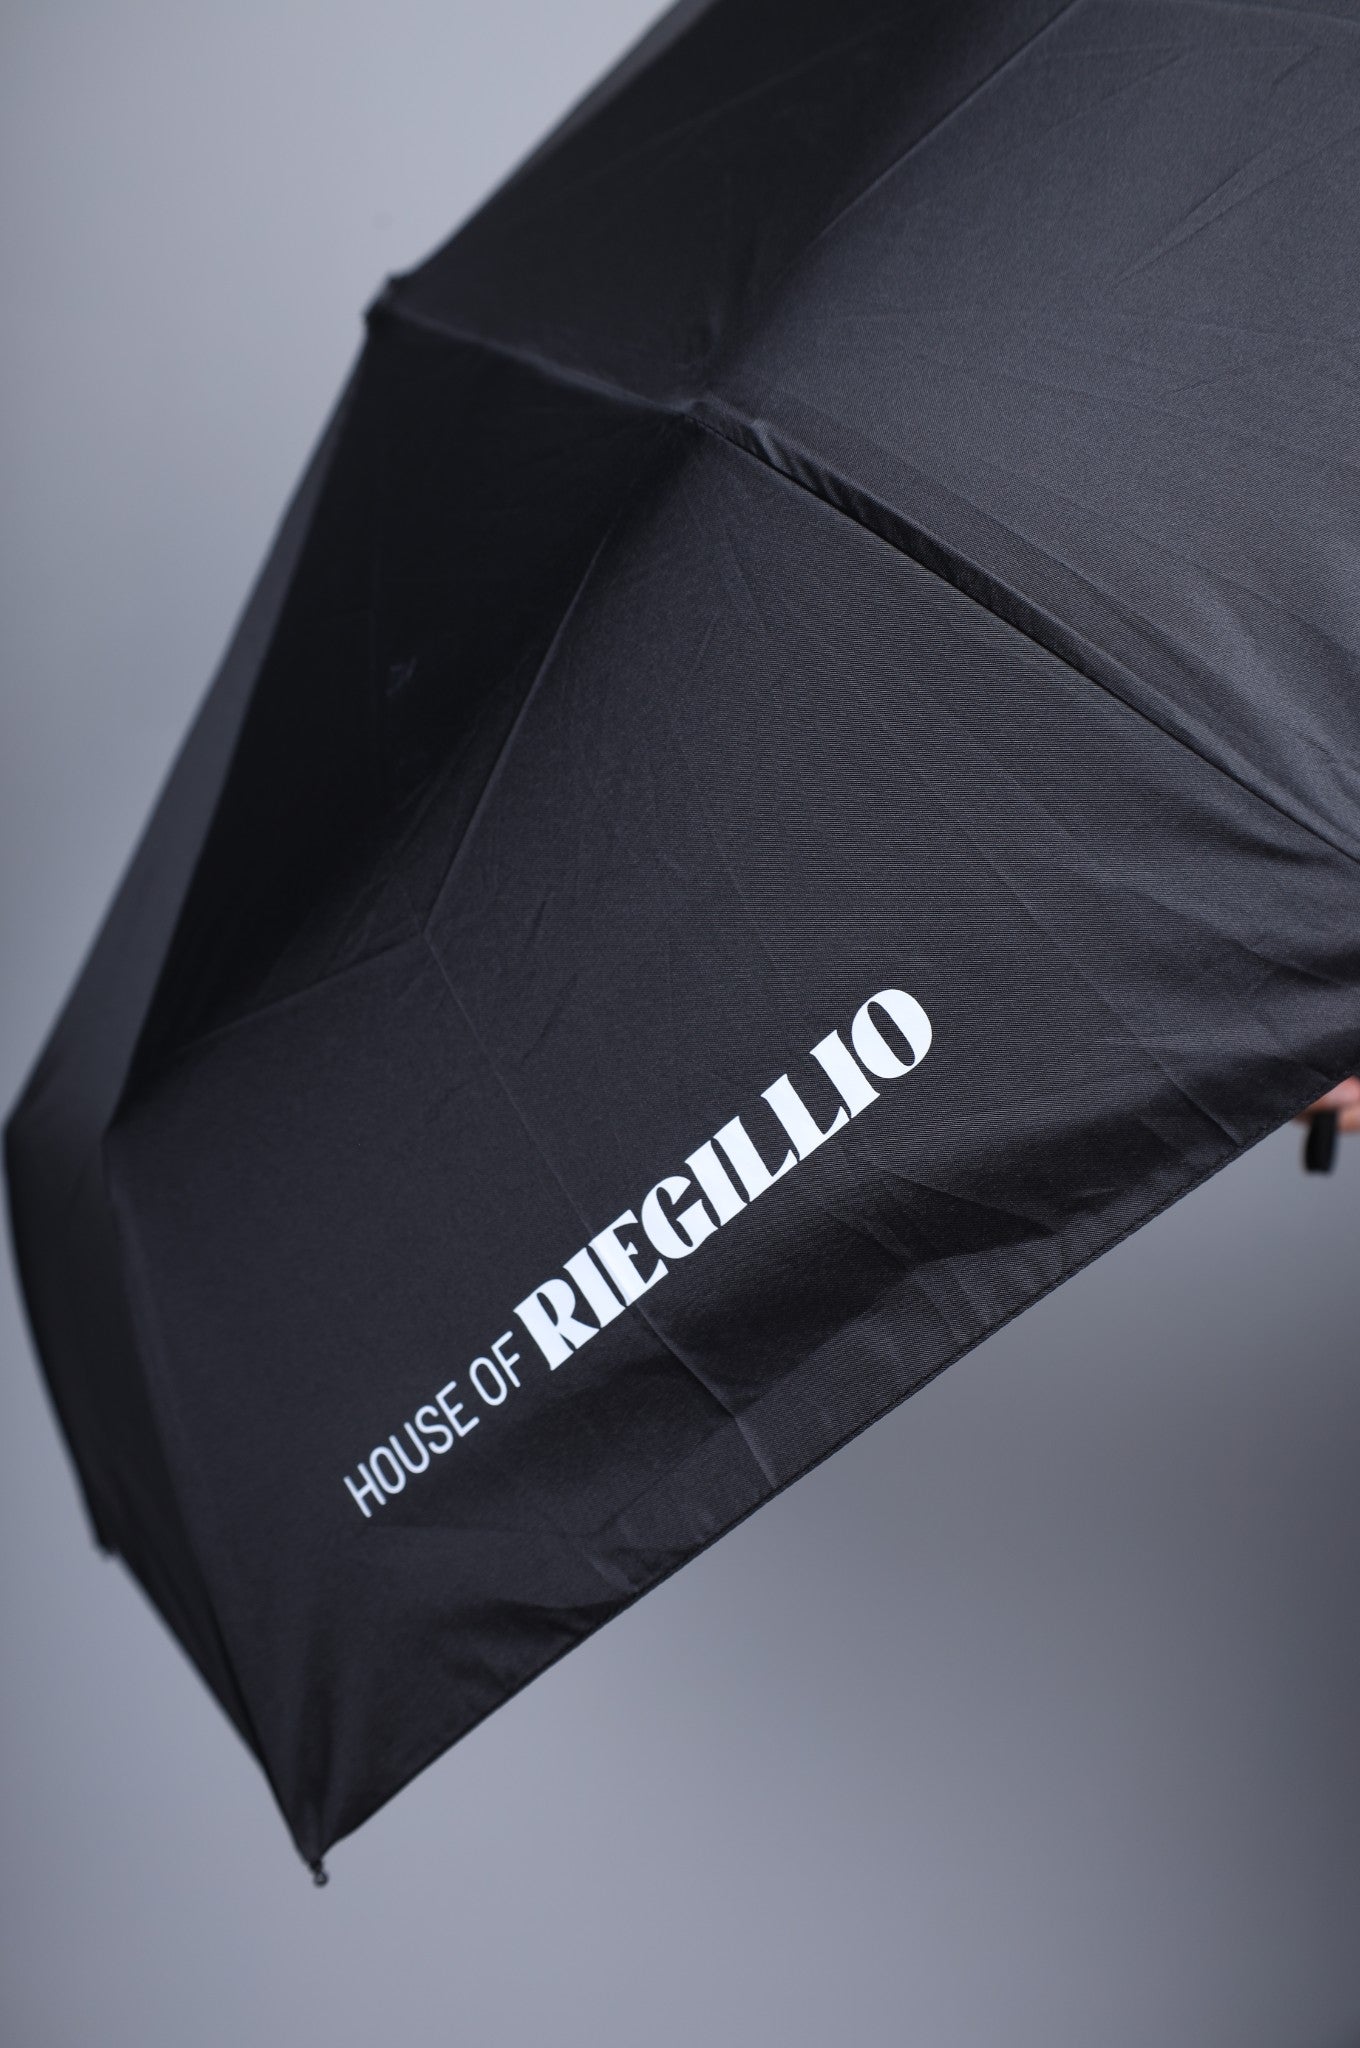 Black House of Riegillio Umbrella at MR. Riegillio